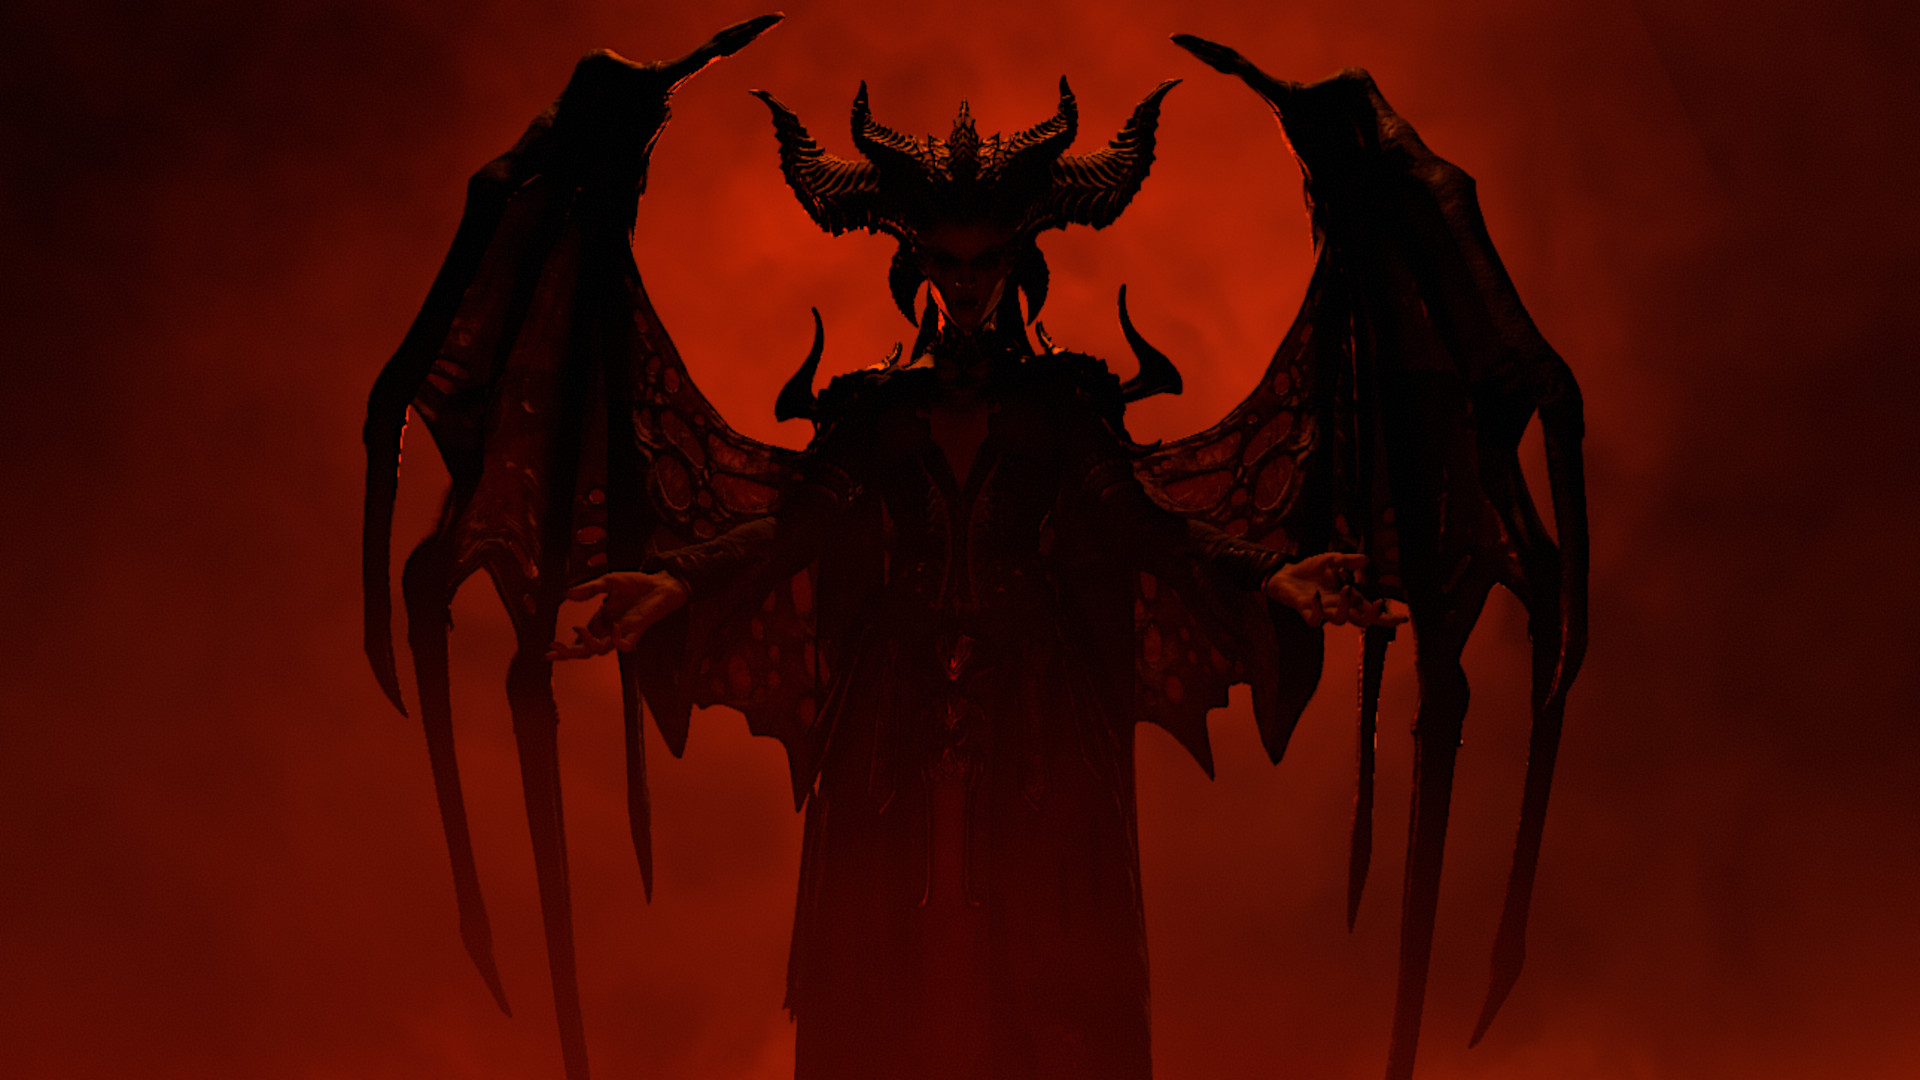 La silueta de Lilith contrasta fuertemente contra un fondo rojo sangre